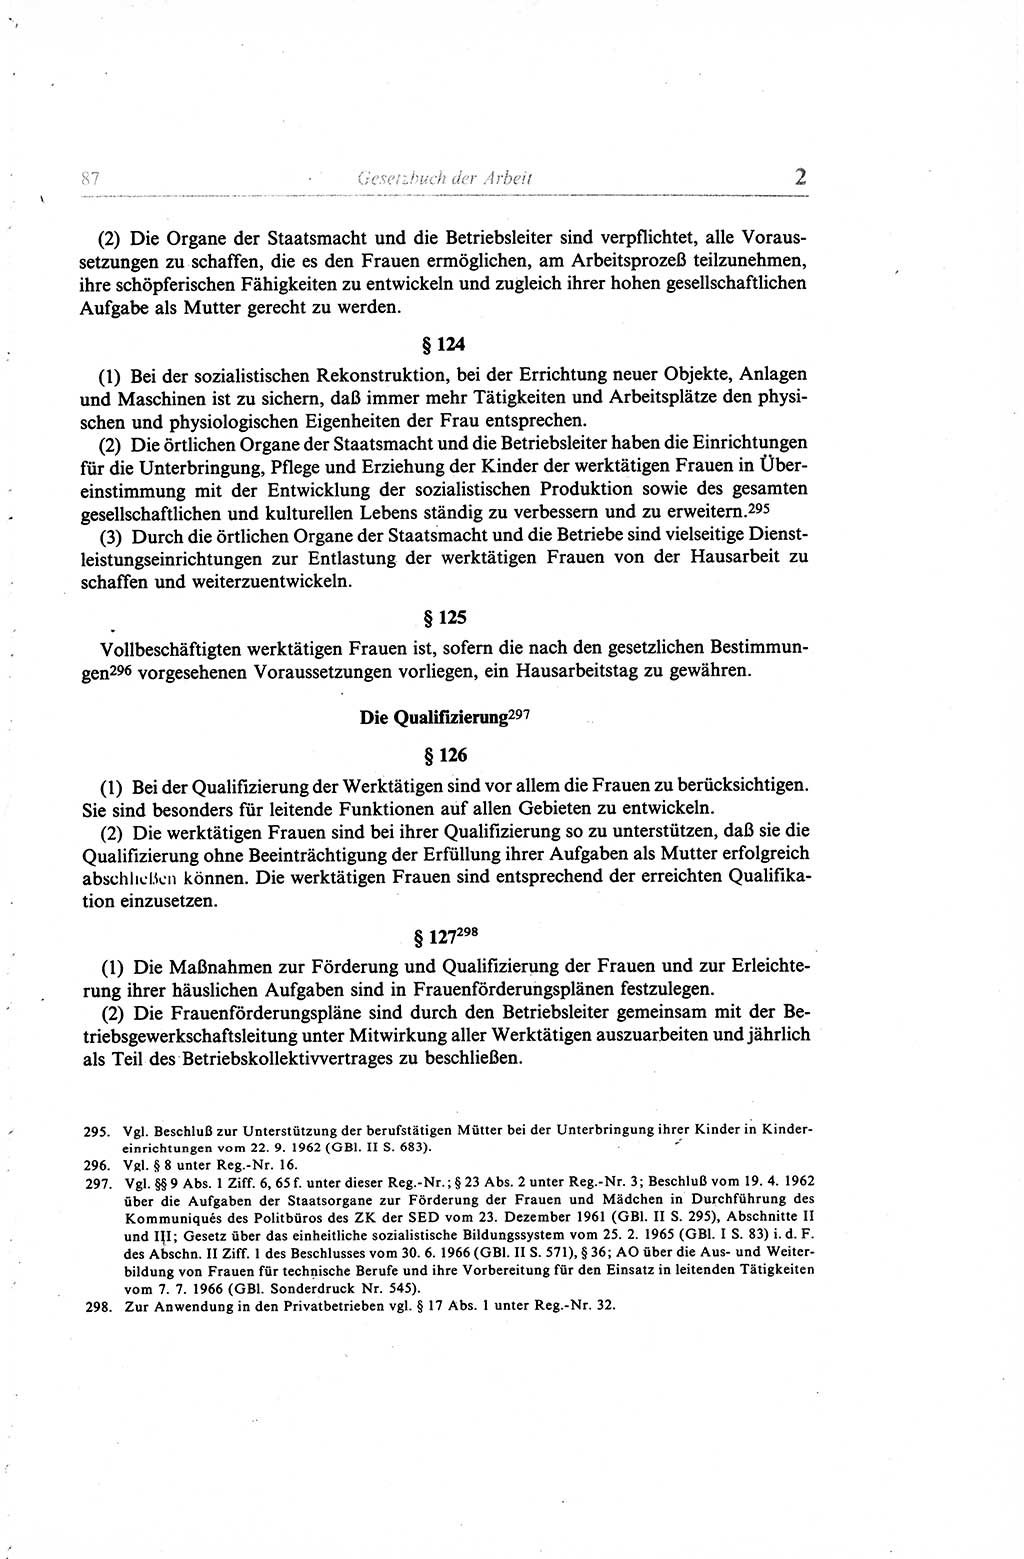 Gesetzbuch der Arbeit (GBA) und andere ausgewählte rechtliche Bestimmungen [Deutsche Demokratische Republik (DDR)] 1968, Seite 87 (GBA DDR 1968, S. 87)